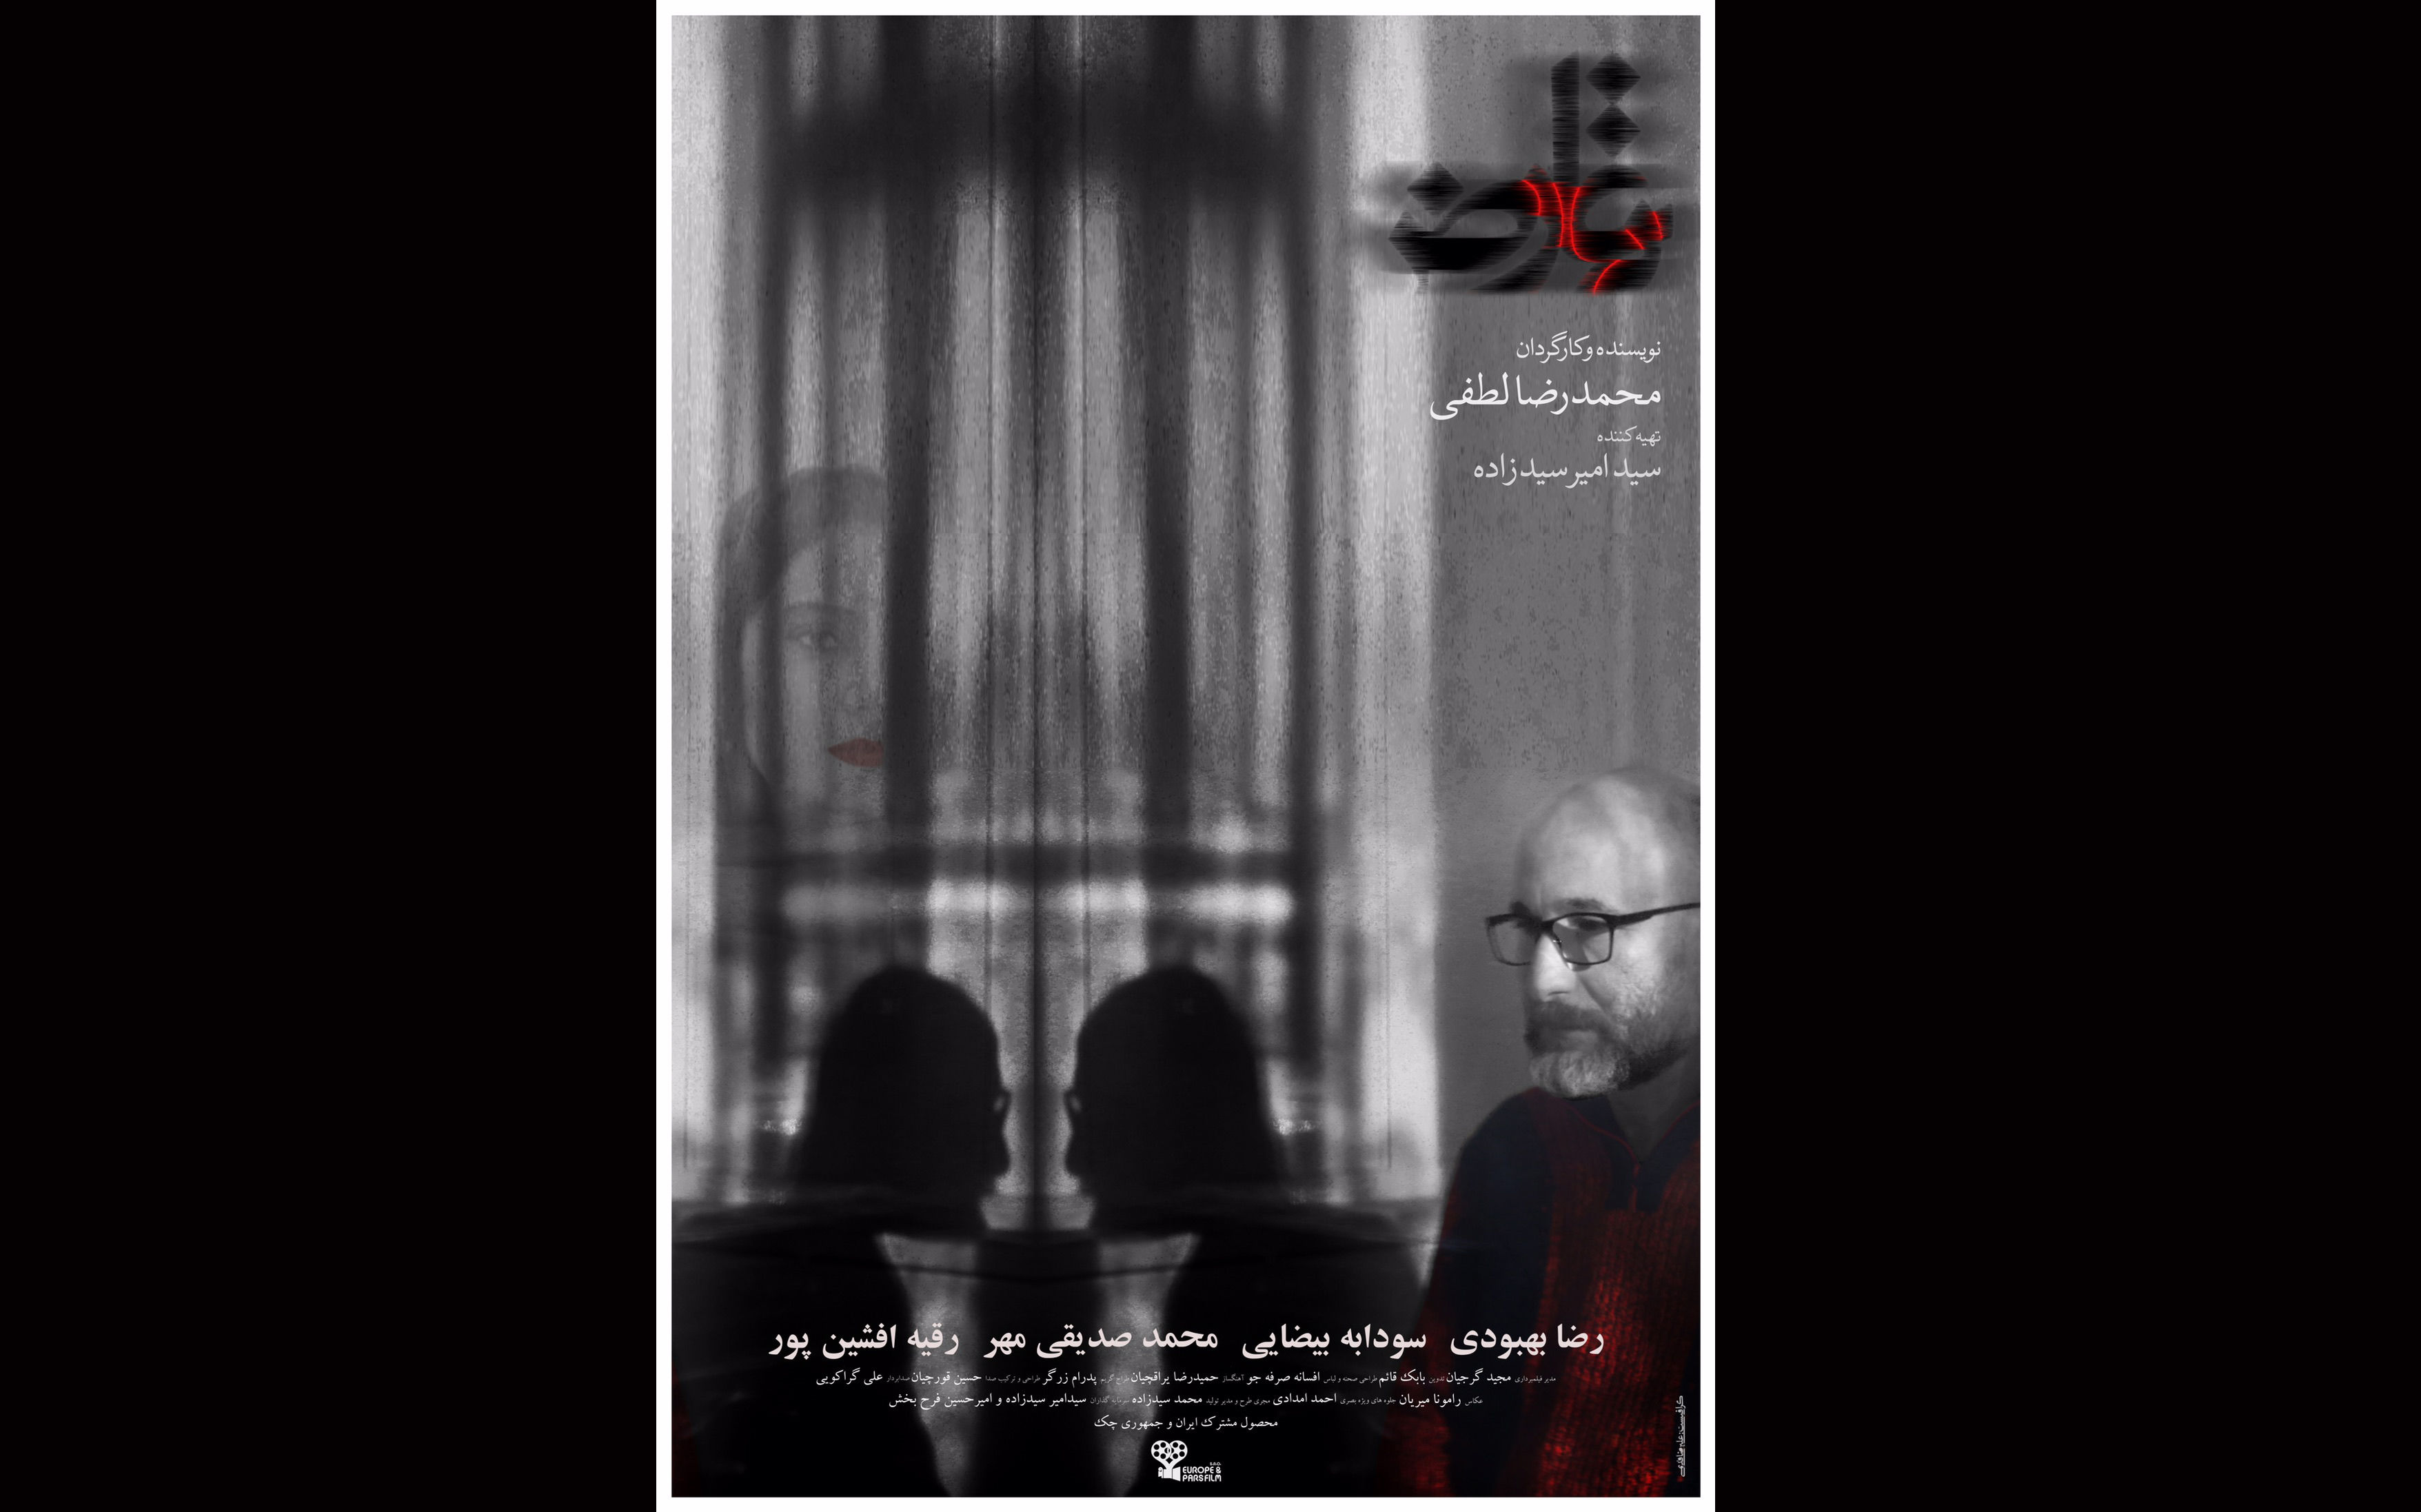 پوستر تعارض در آستانه اولین اکران در سی و هشتمین جشنواره فیلم فجر رونمایی شد